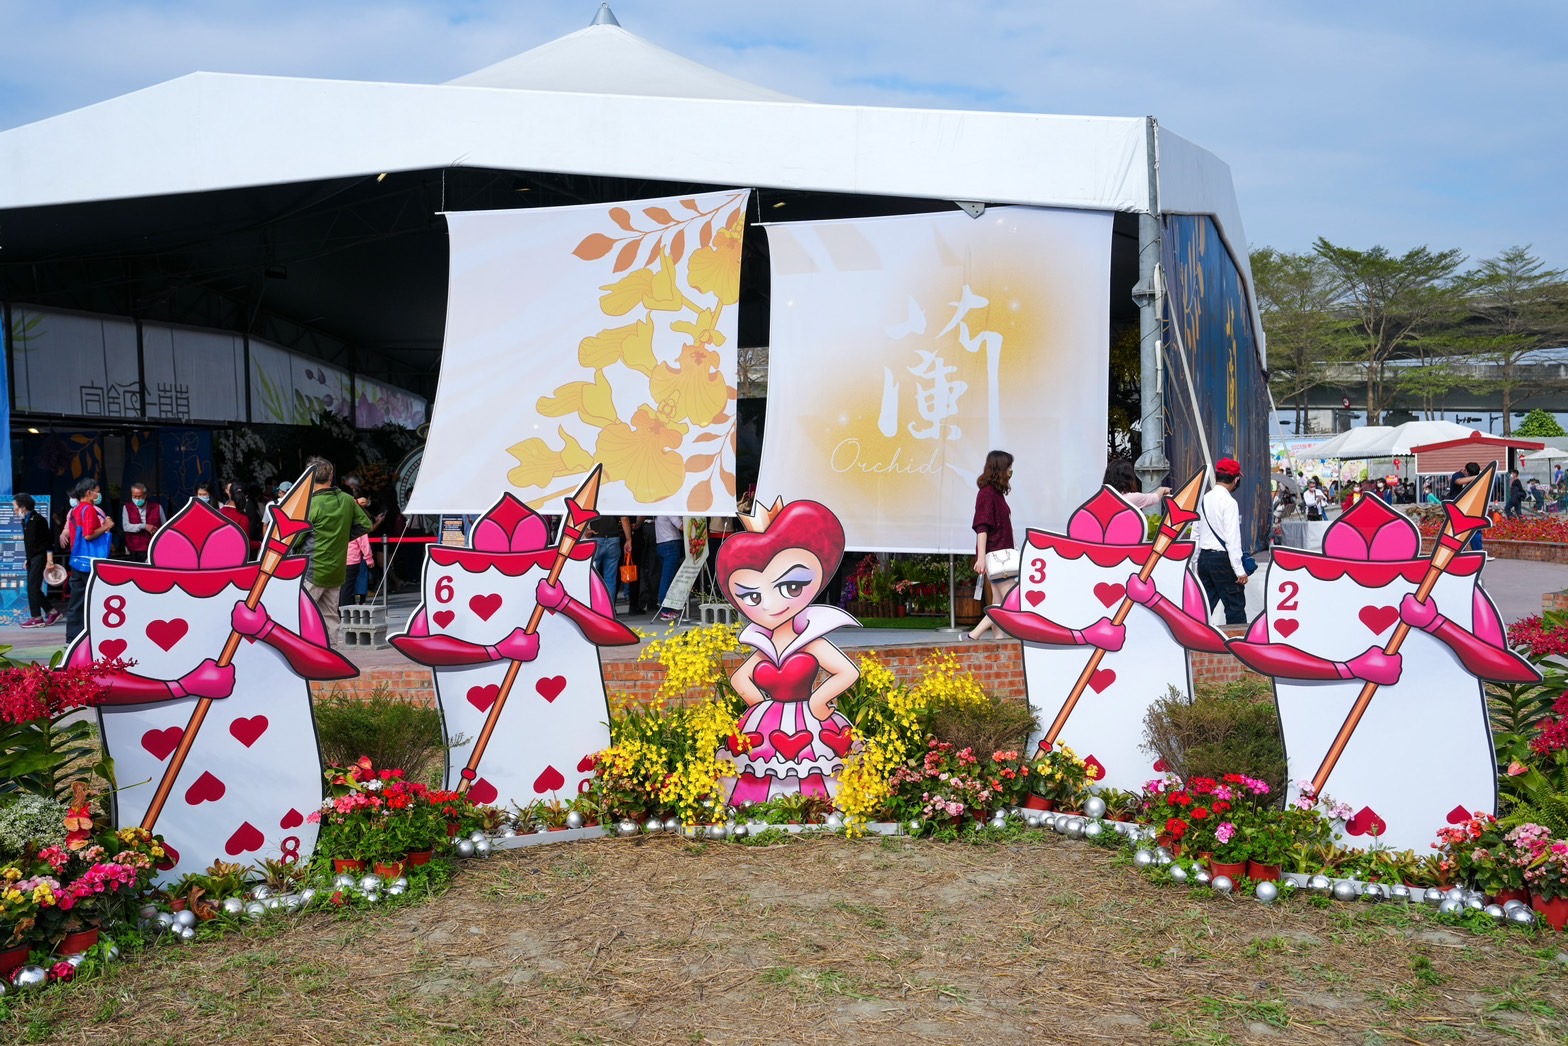 屏東熱帶農業博覽會